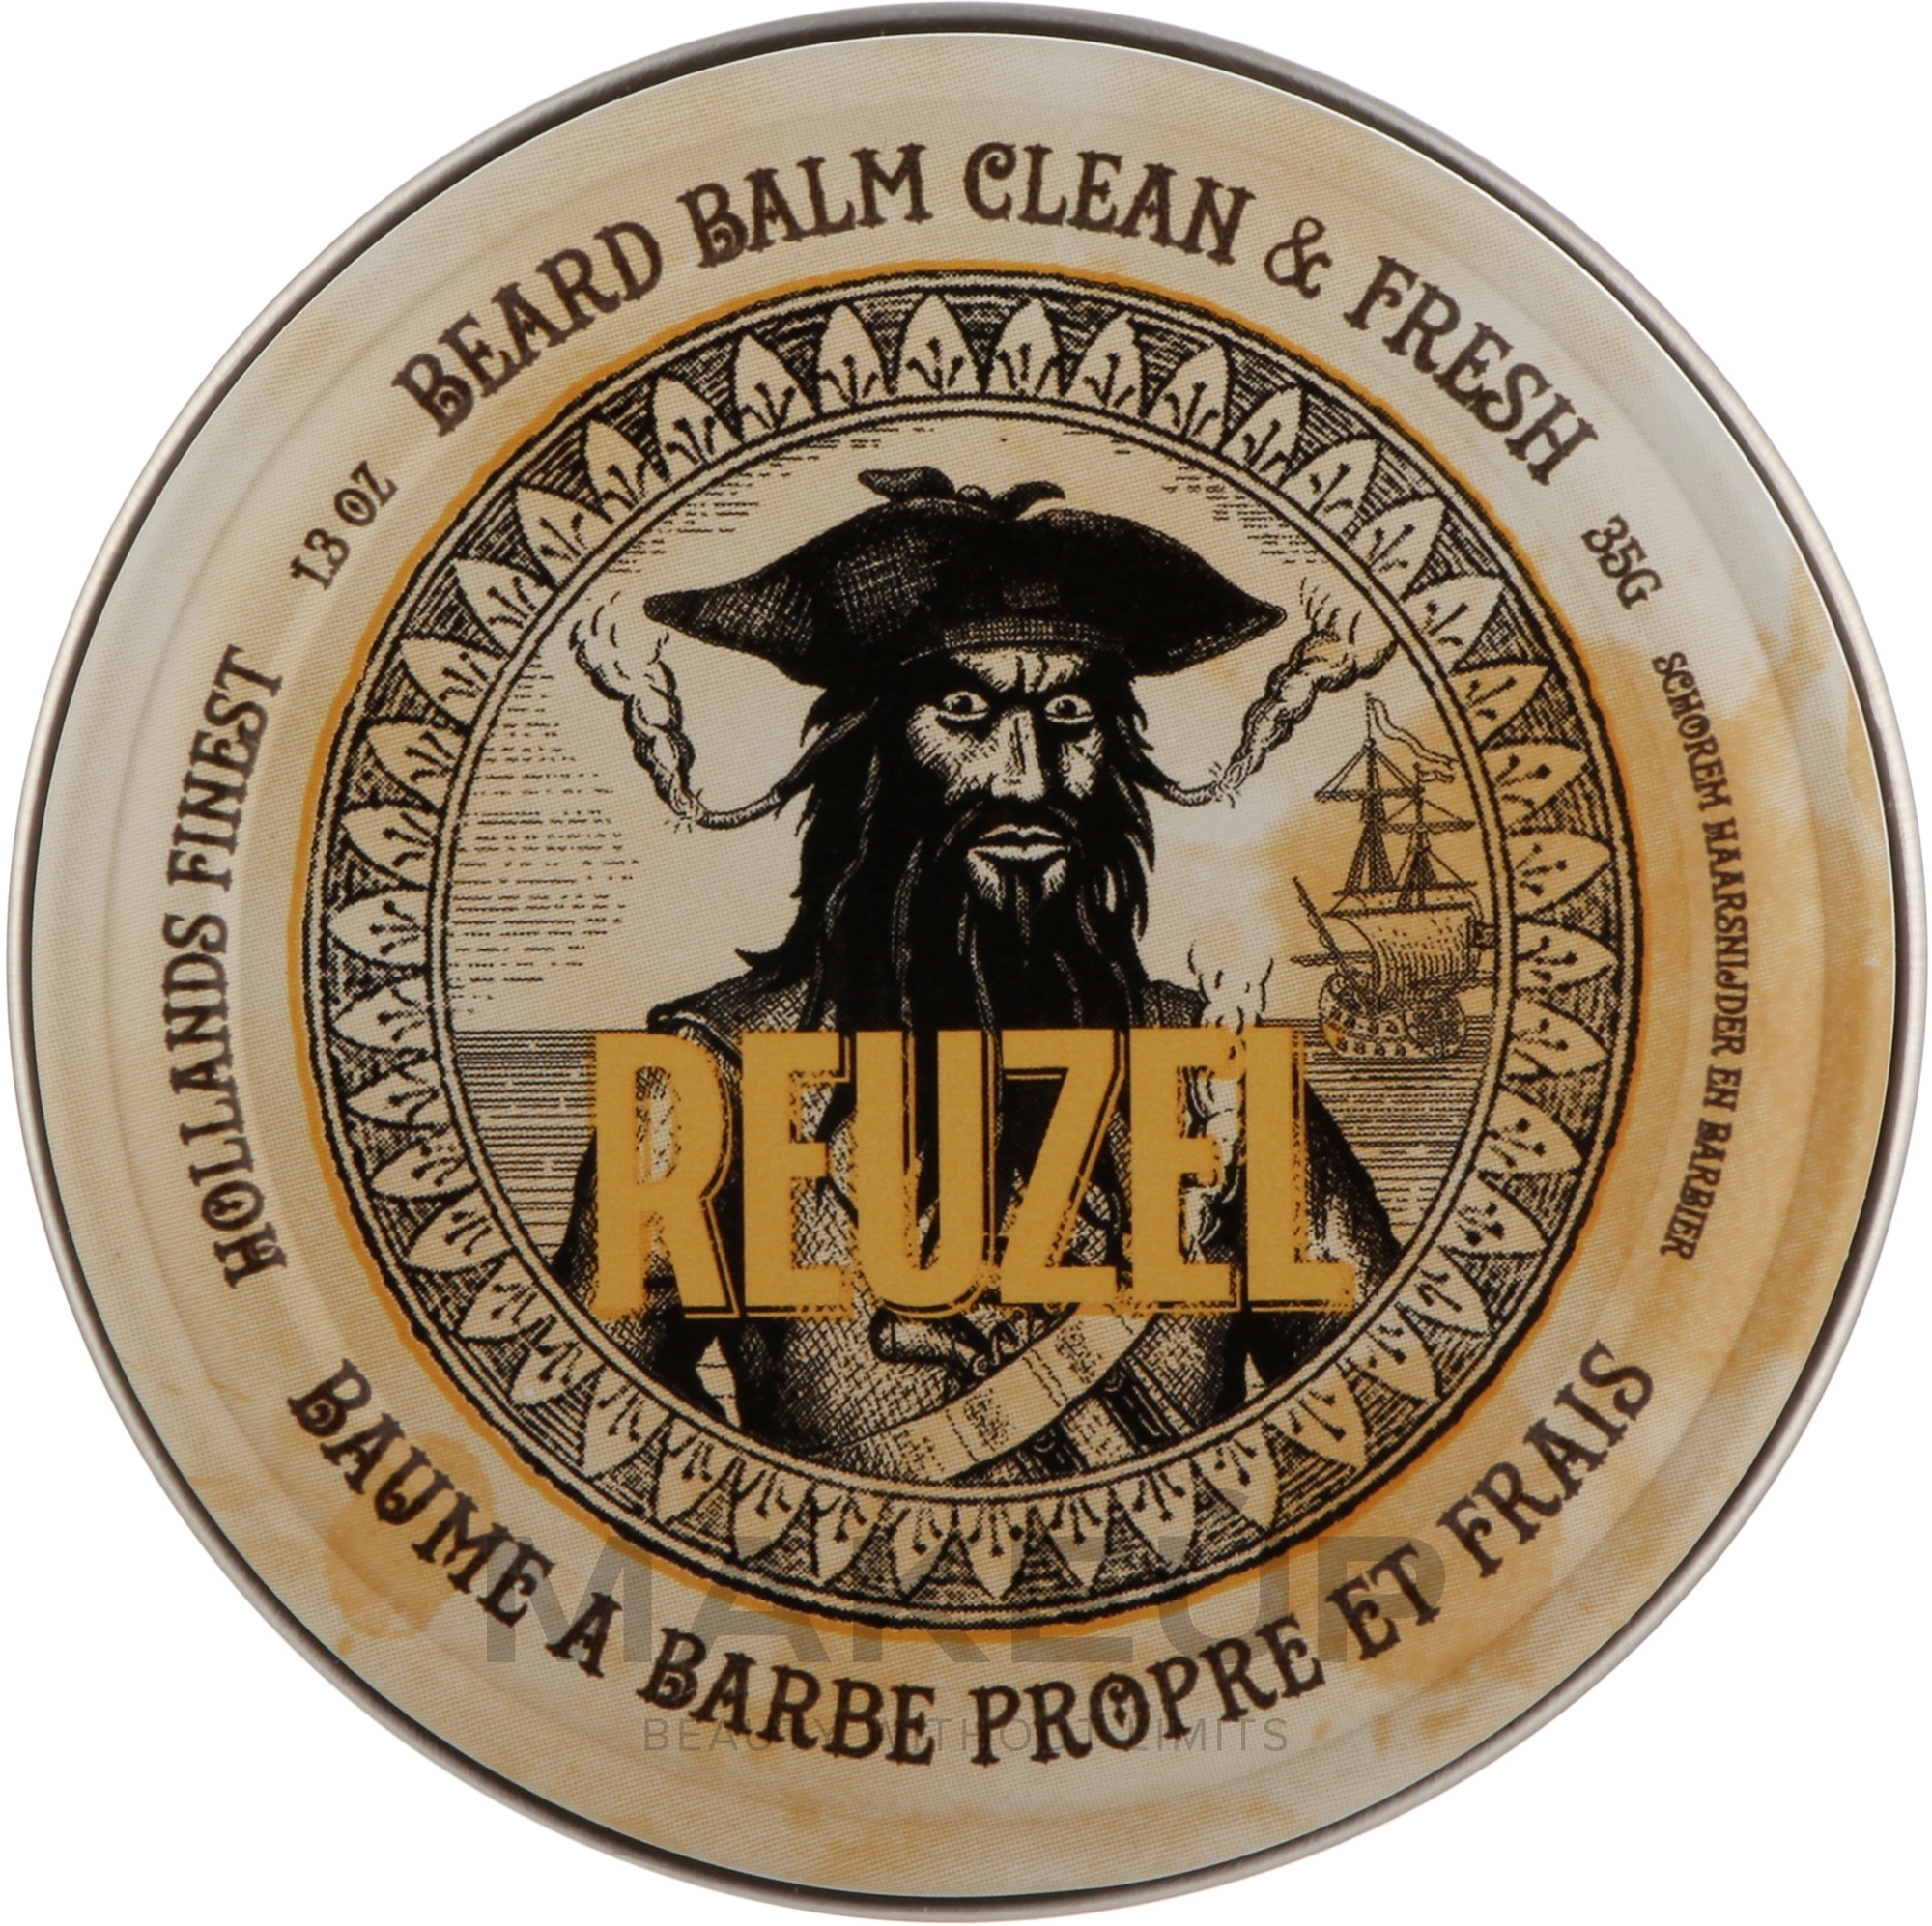 Чоловічий бальзам для бороди - Reuzel Beard Balm Clean & Fresh — фото 35g